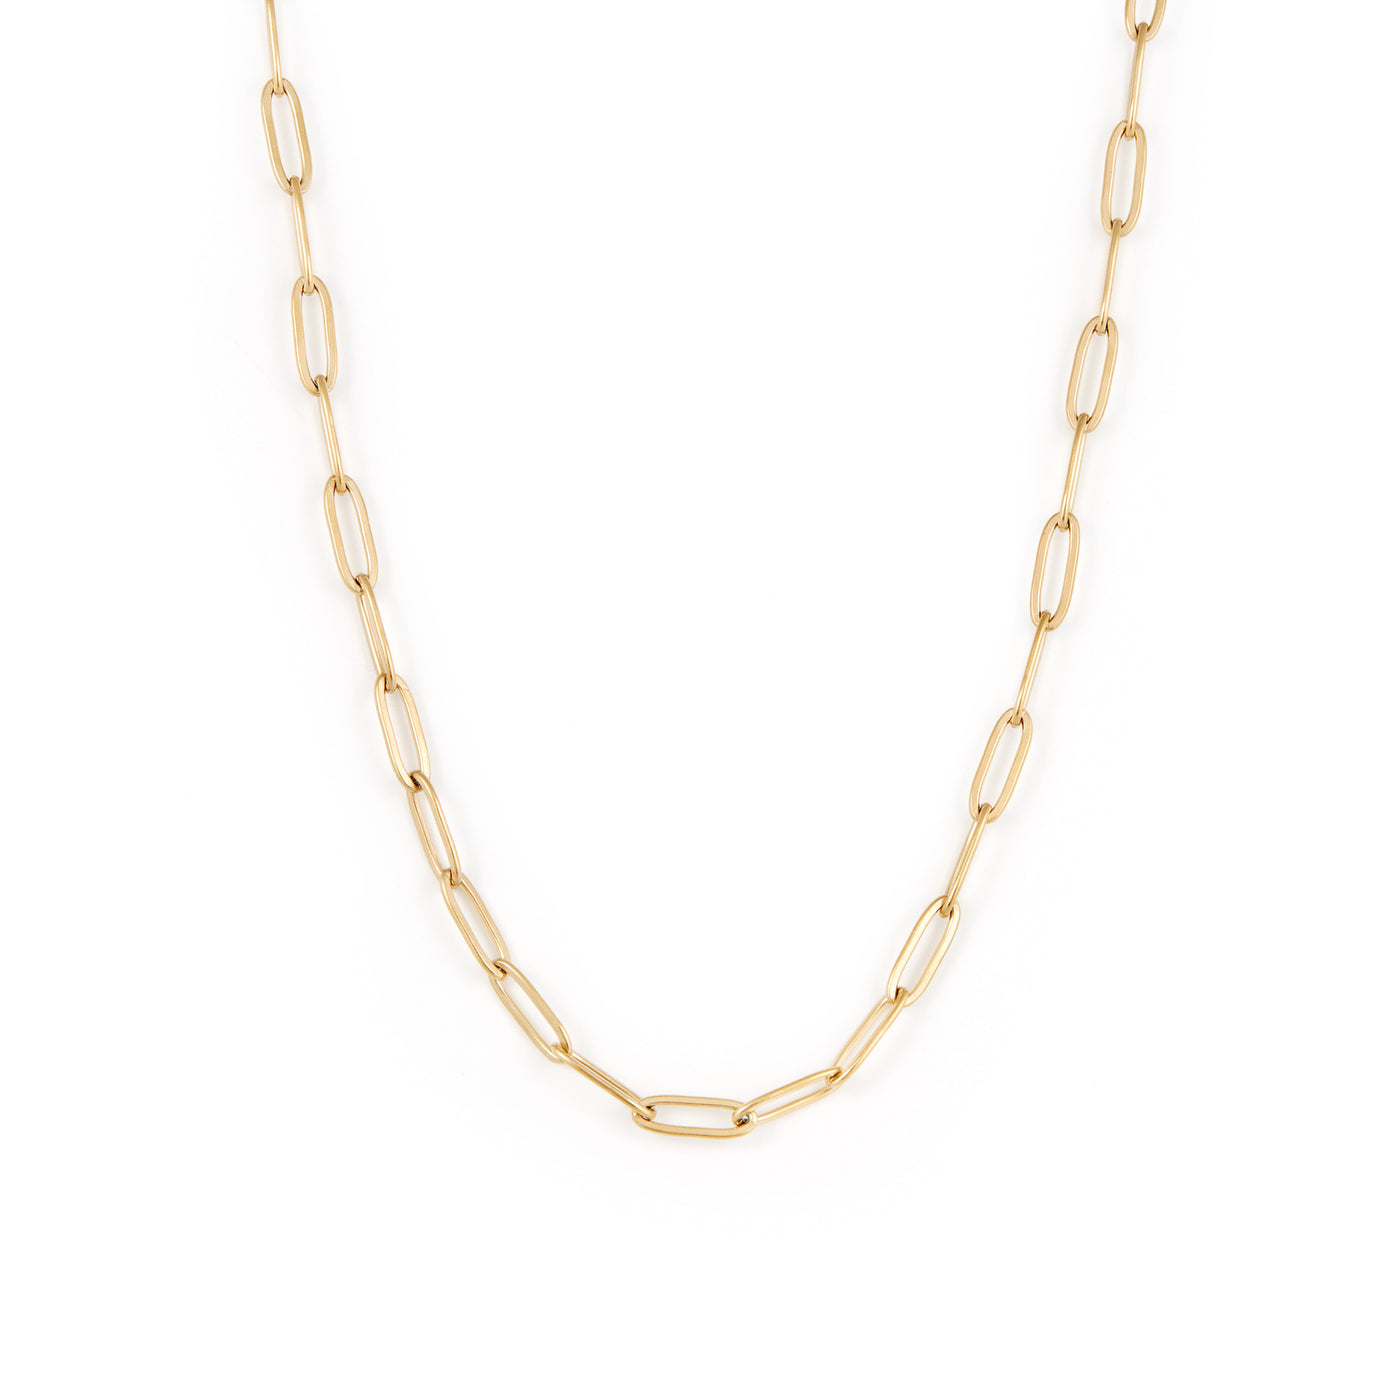 Paperclip Necklace - Gold Paperclip Necklace - Gold